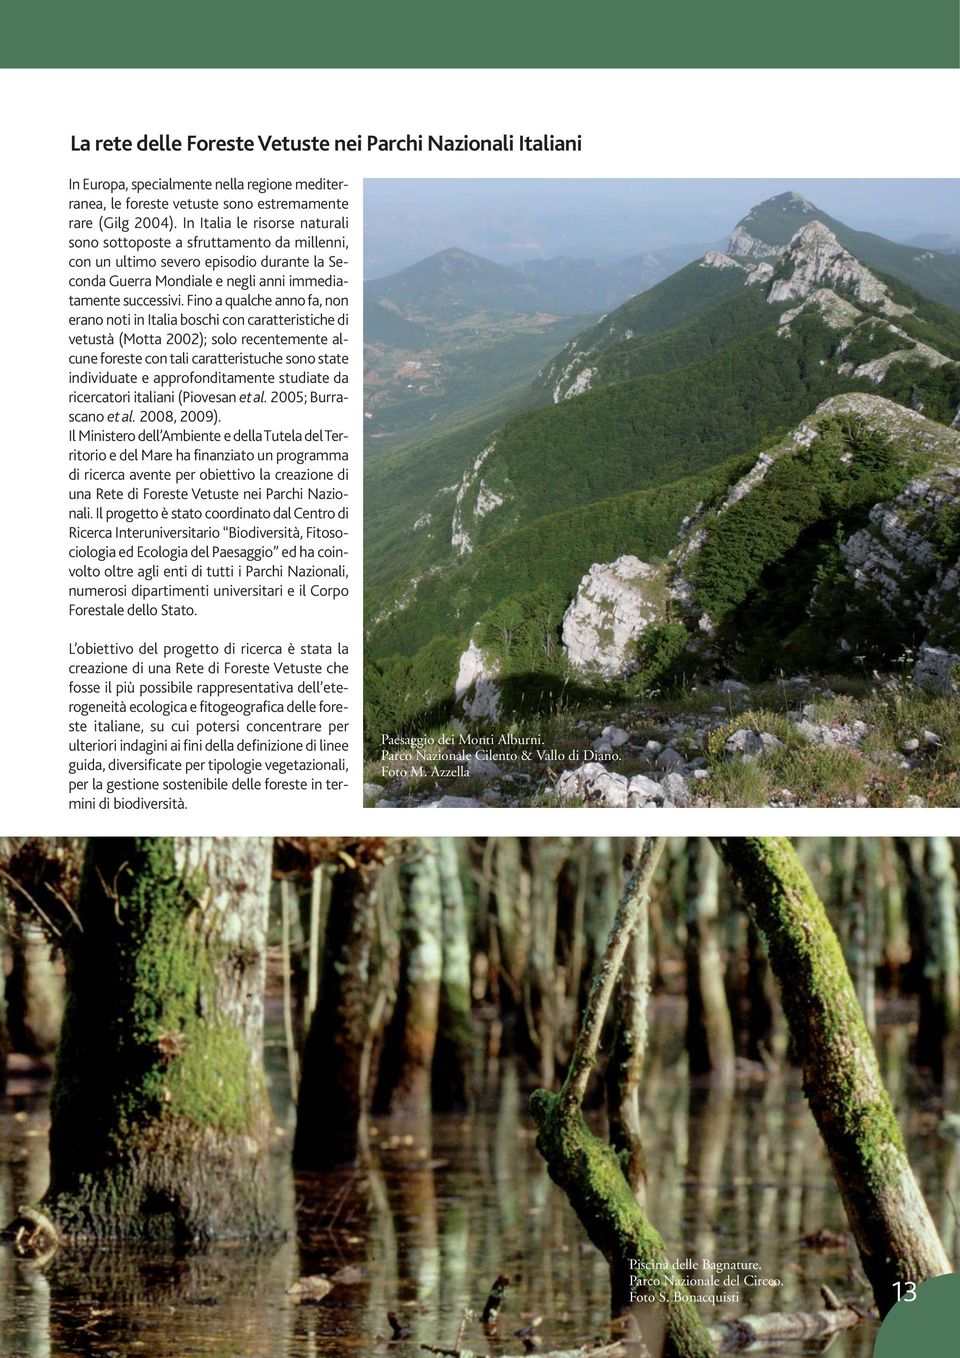 Fino a qualche anno fa, non erano noti in Italia boschi con caratteristiche di vetustà (Motta 2002); solo recentemente alcune foreste con tali caratteristuche sono state individuate e